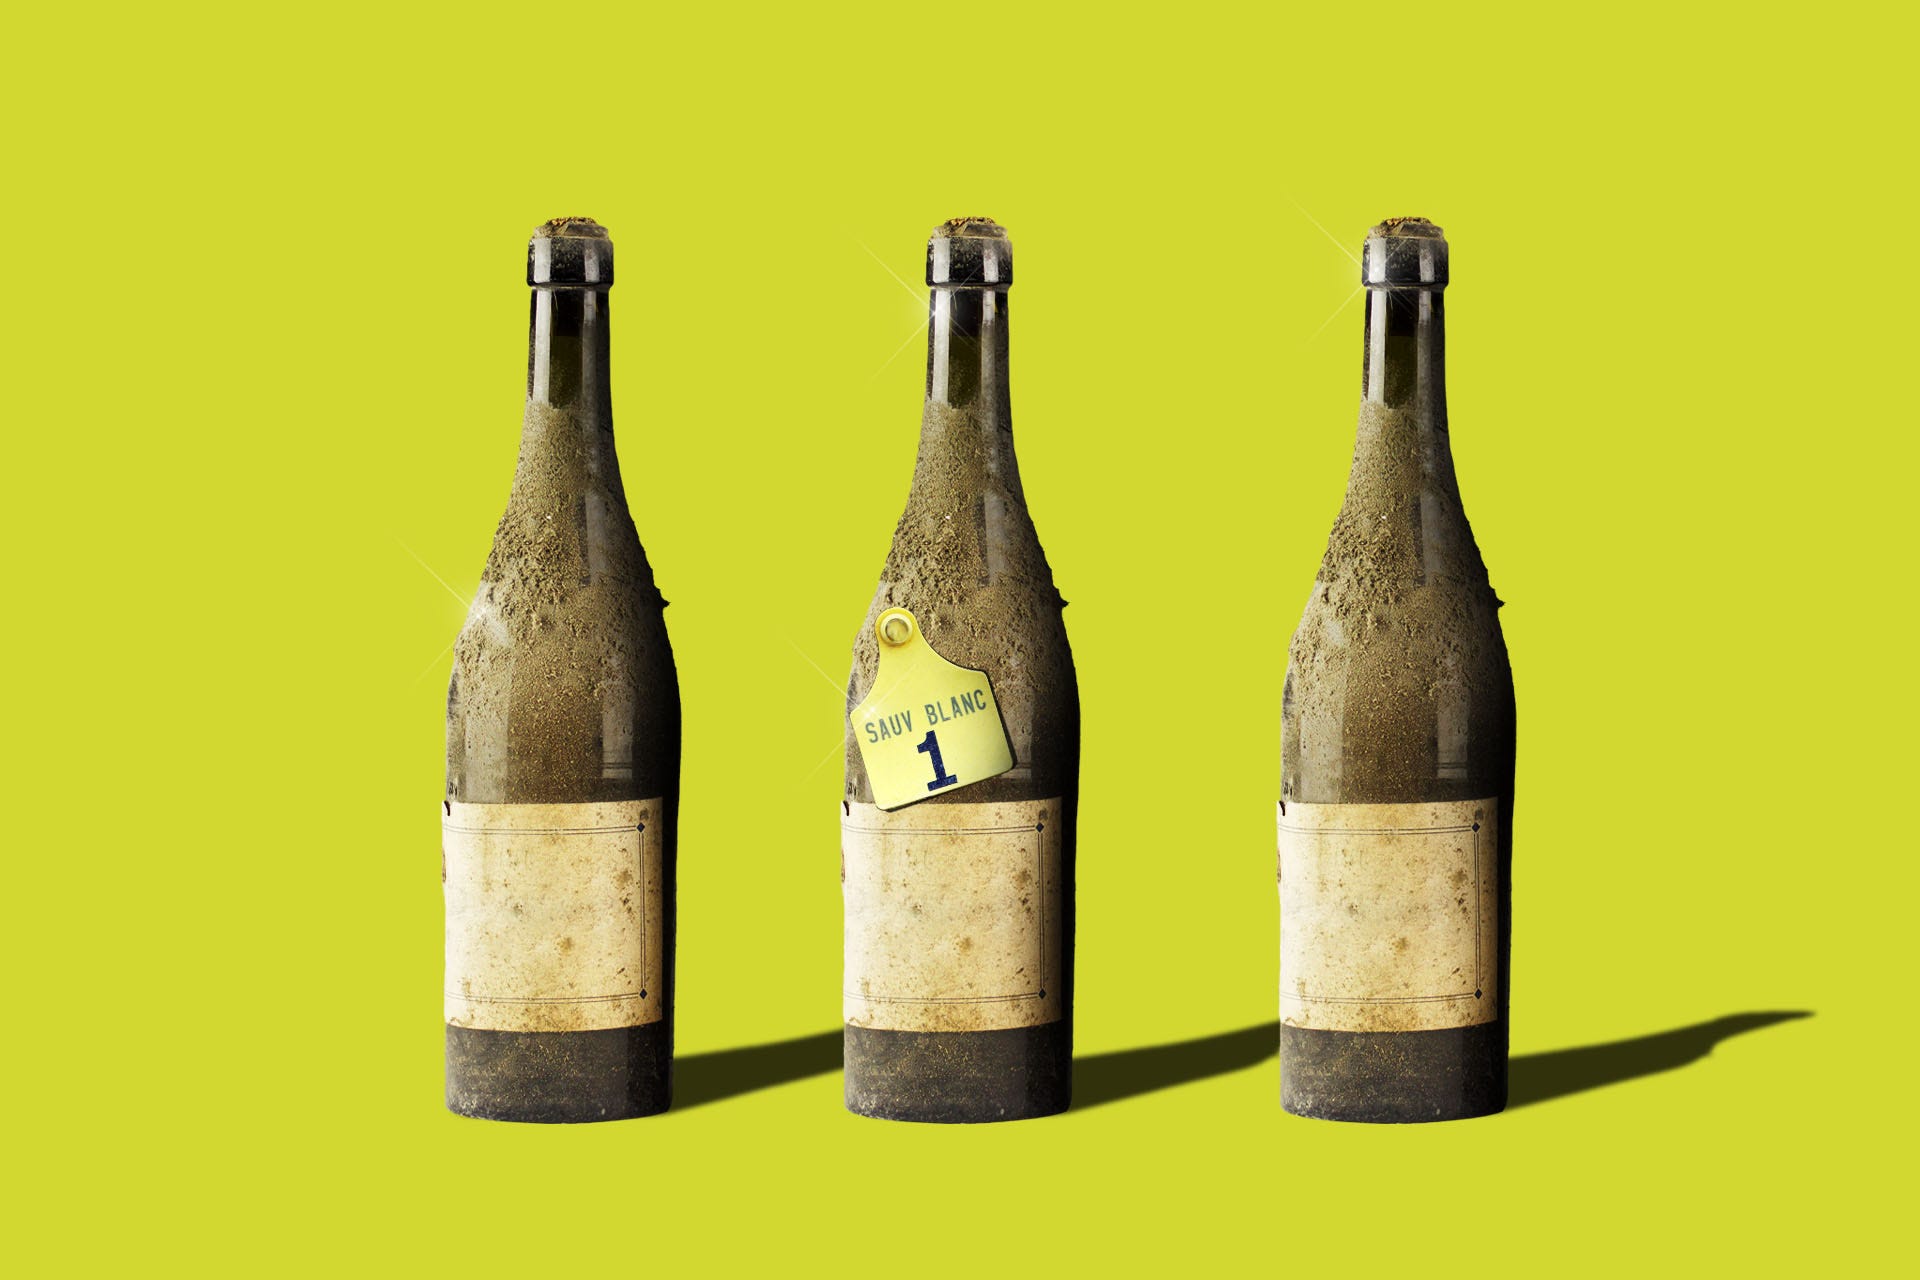 3 vintage bottles of Sauv Blanc